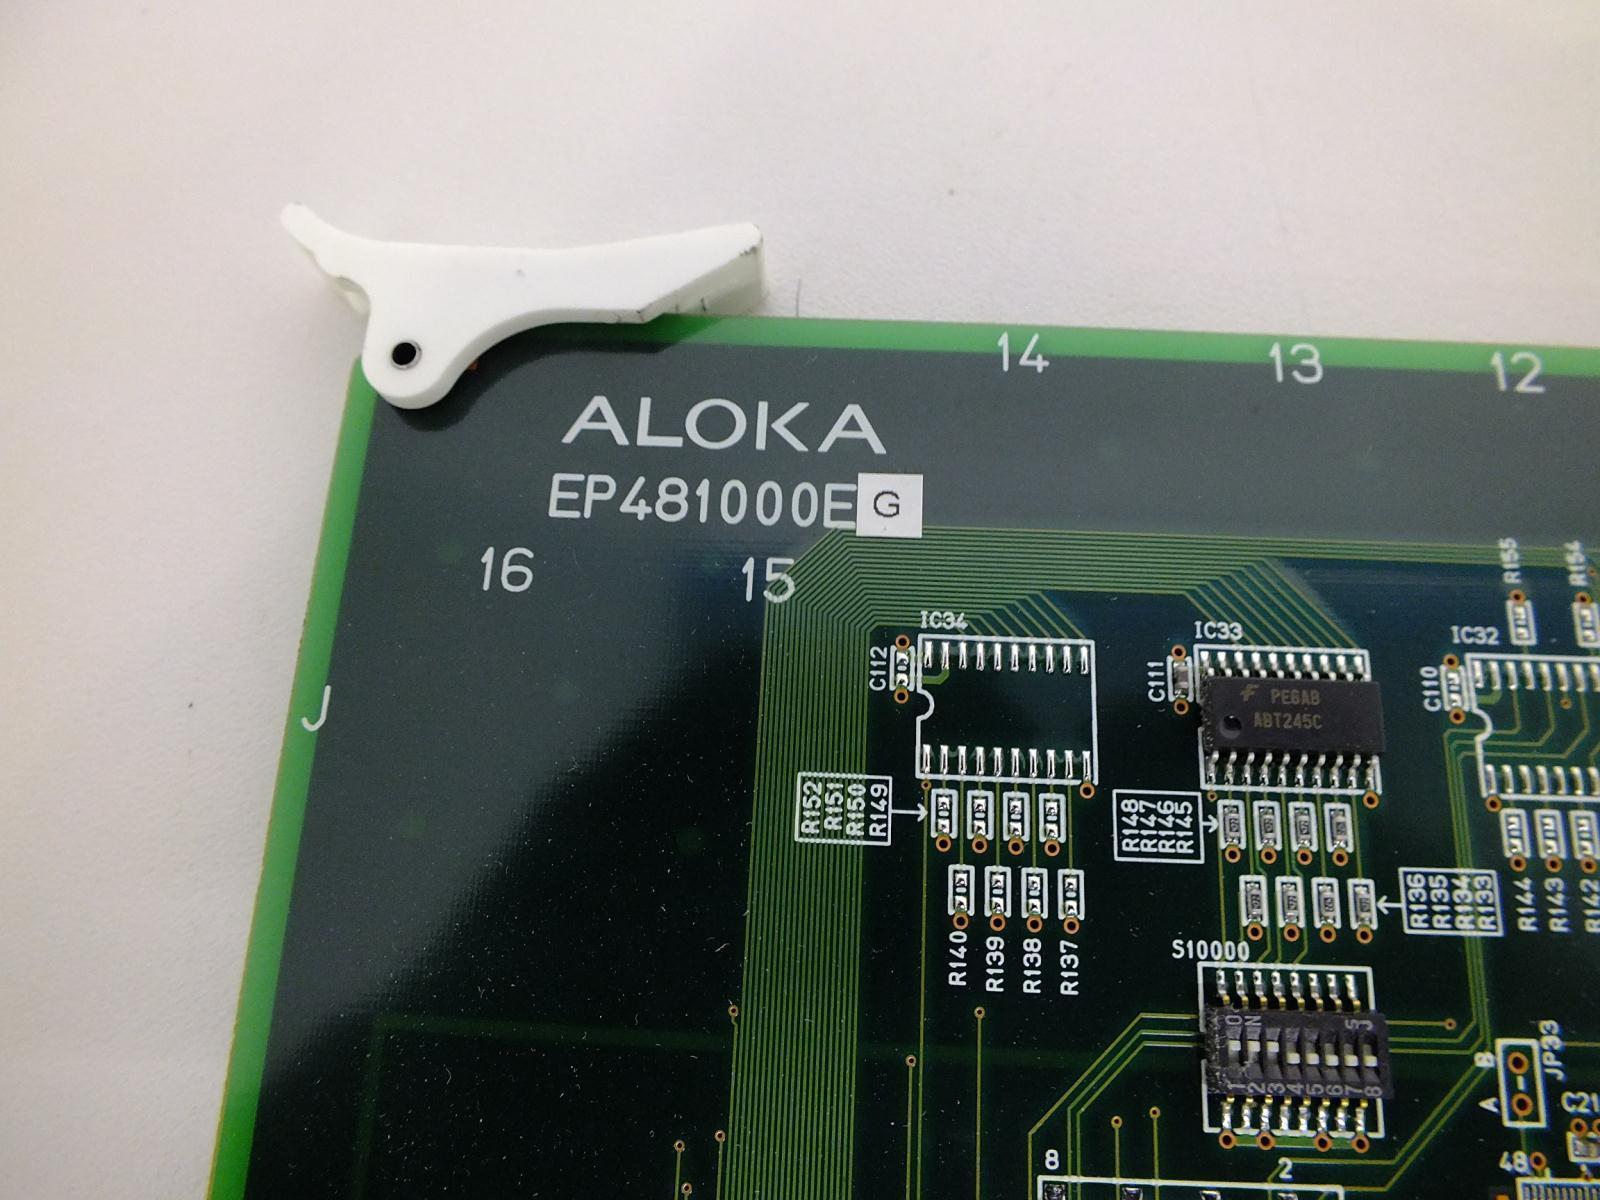 Aloka Prosound Ultrasound SSD-3500SV Board EP481000EG DIAGNOSTIC ULTRASOUND MACHINES FOR SALE